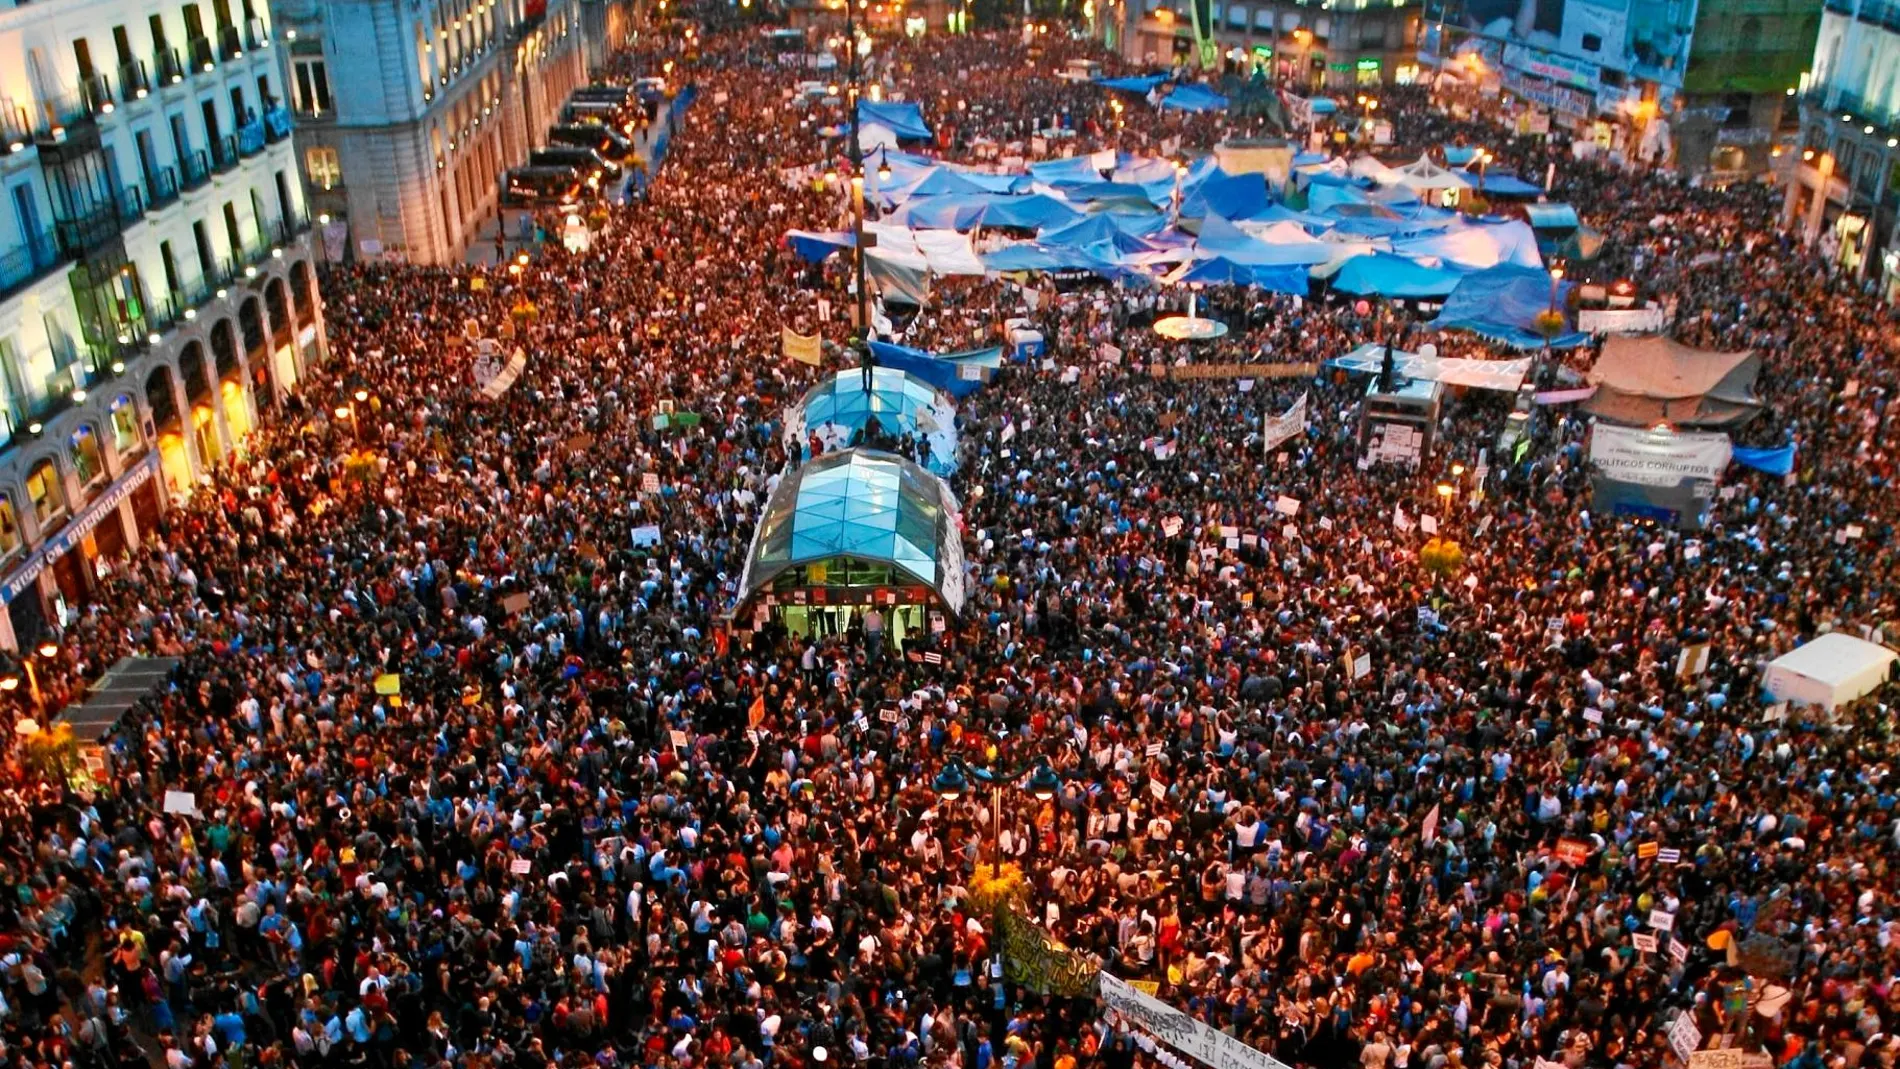 El movimiento del 15-M surgió en Sol tras una manifestación convocada por distintos colectivos el 15 de mayo de 2011